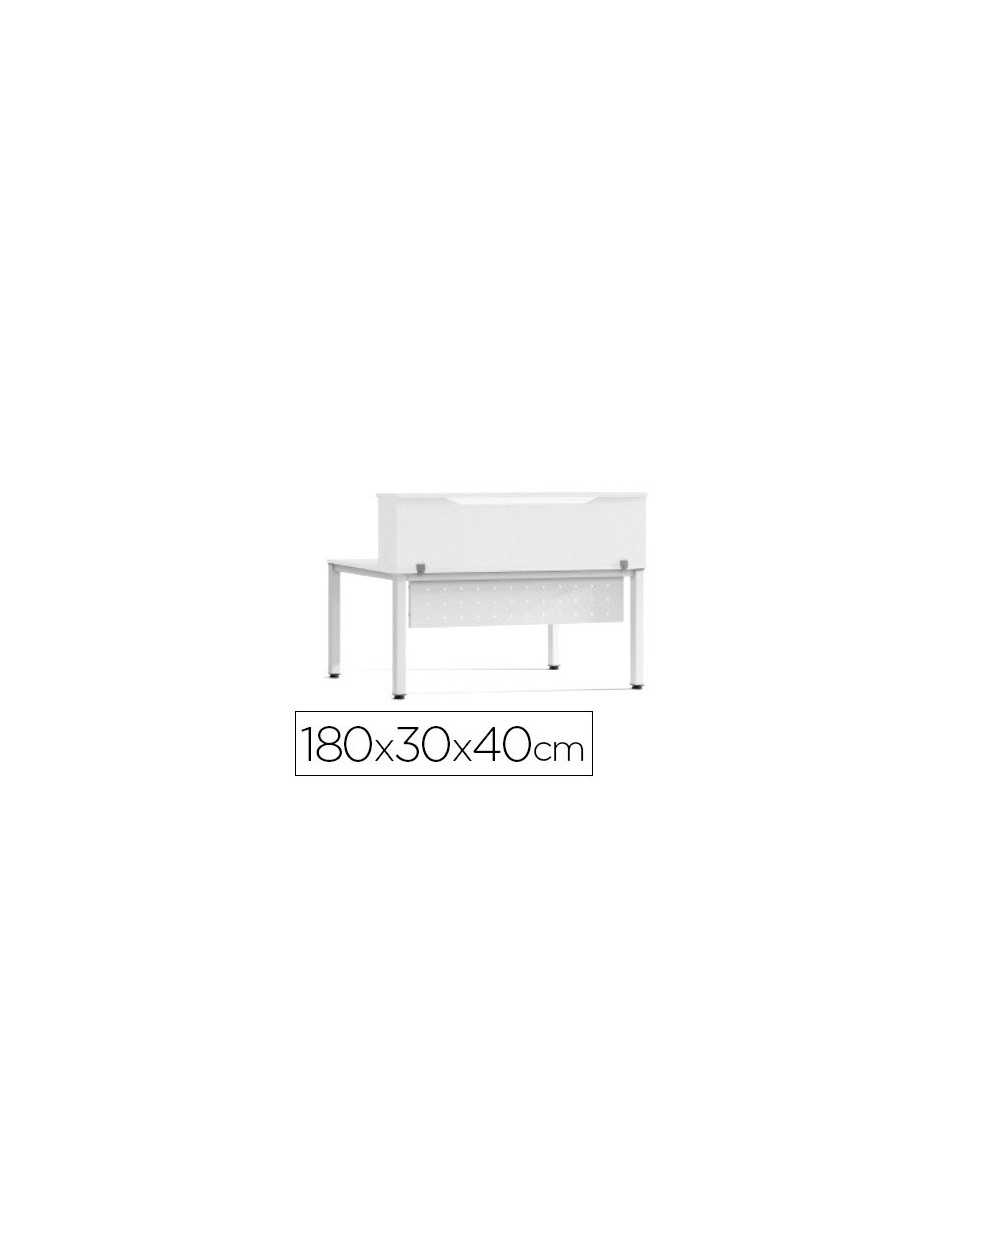 Mostrador de altillo rocada valido para mesas work metal executive 180x30x40 cm acabado aw04 blanco blanco